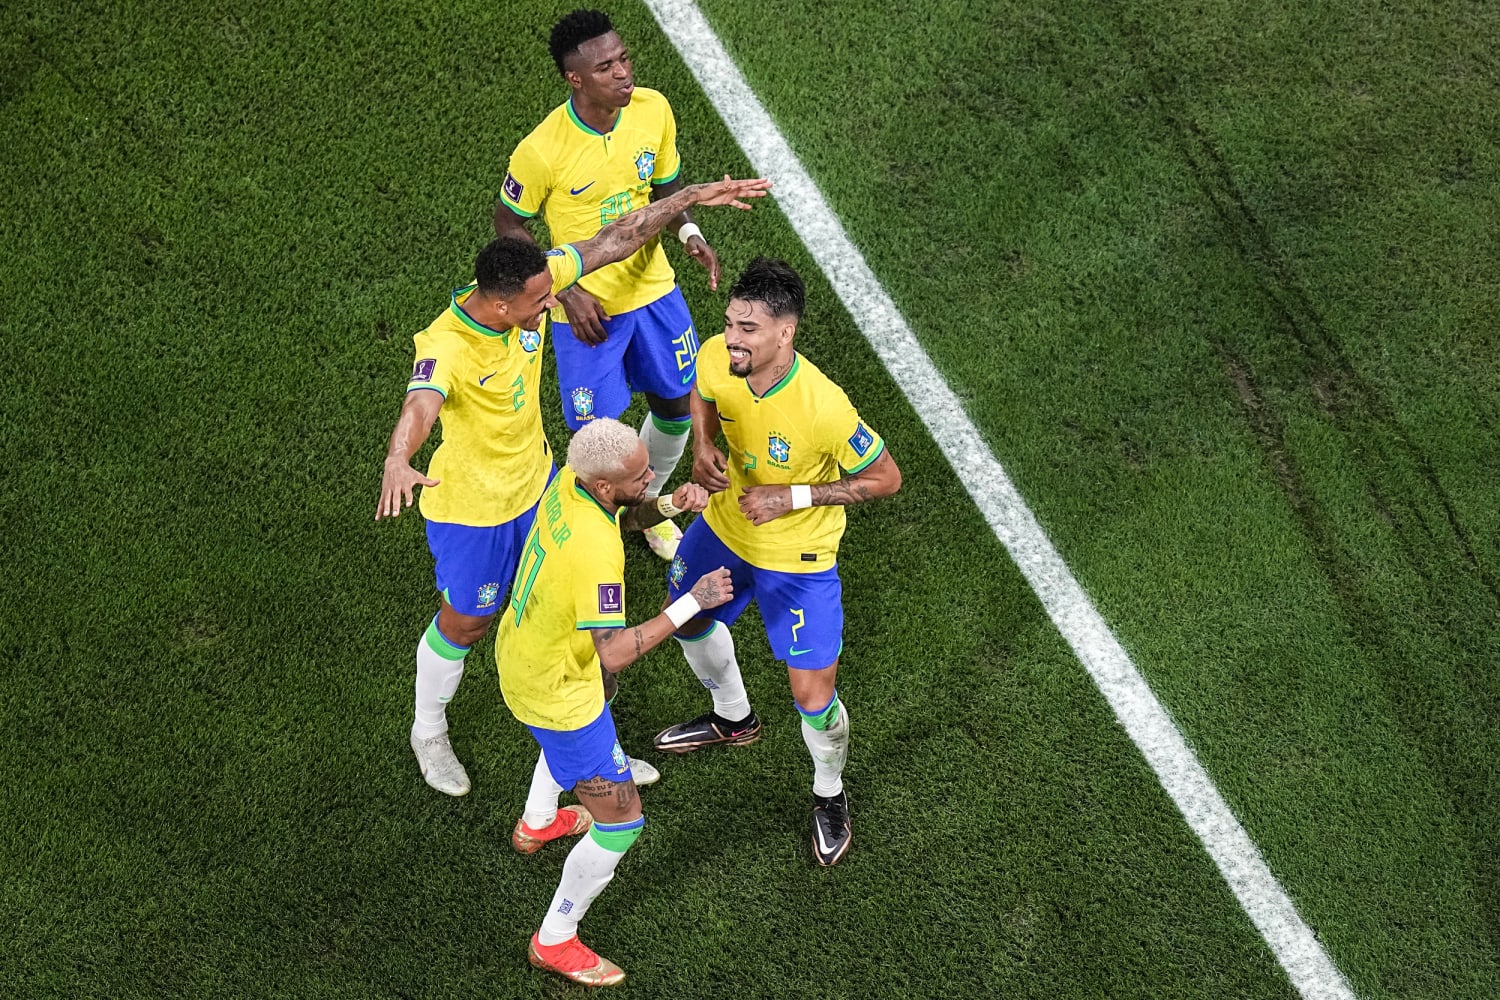 Brazilian funk is the World Cup soundtrack despite team's loss